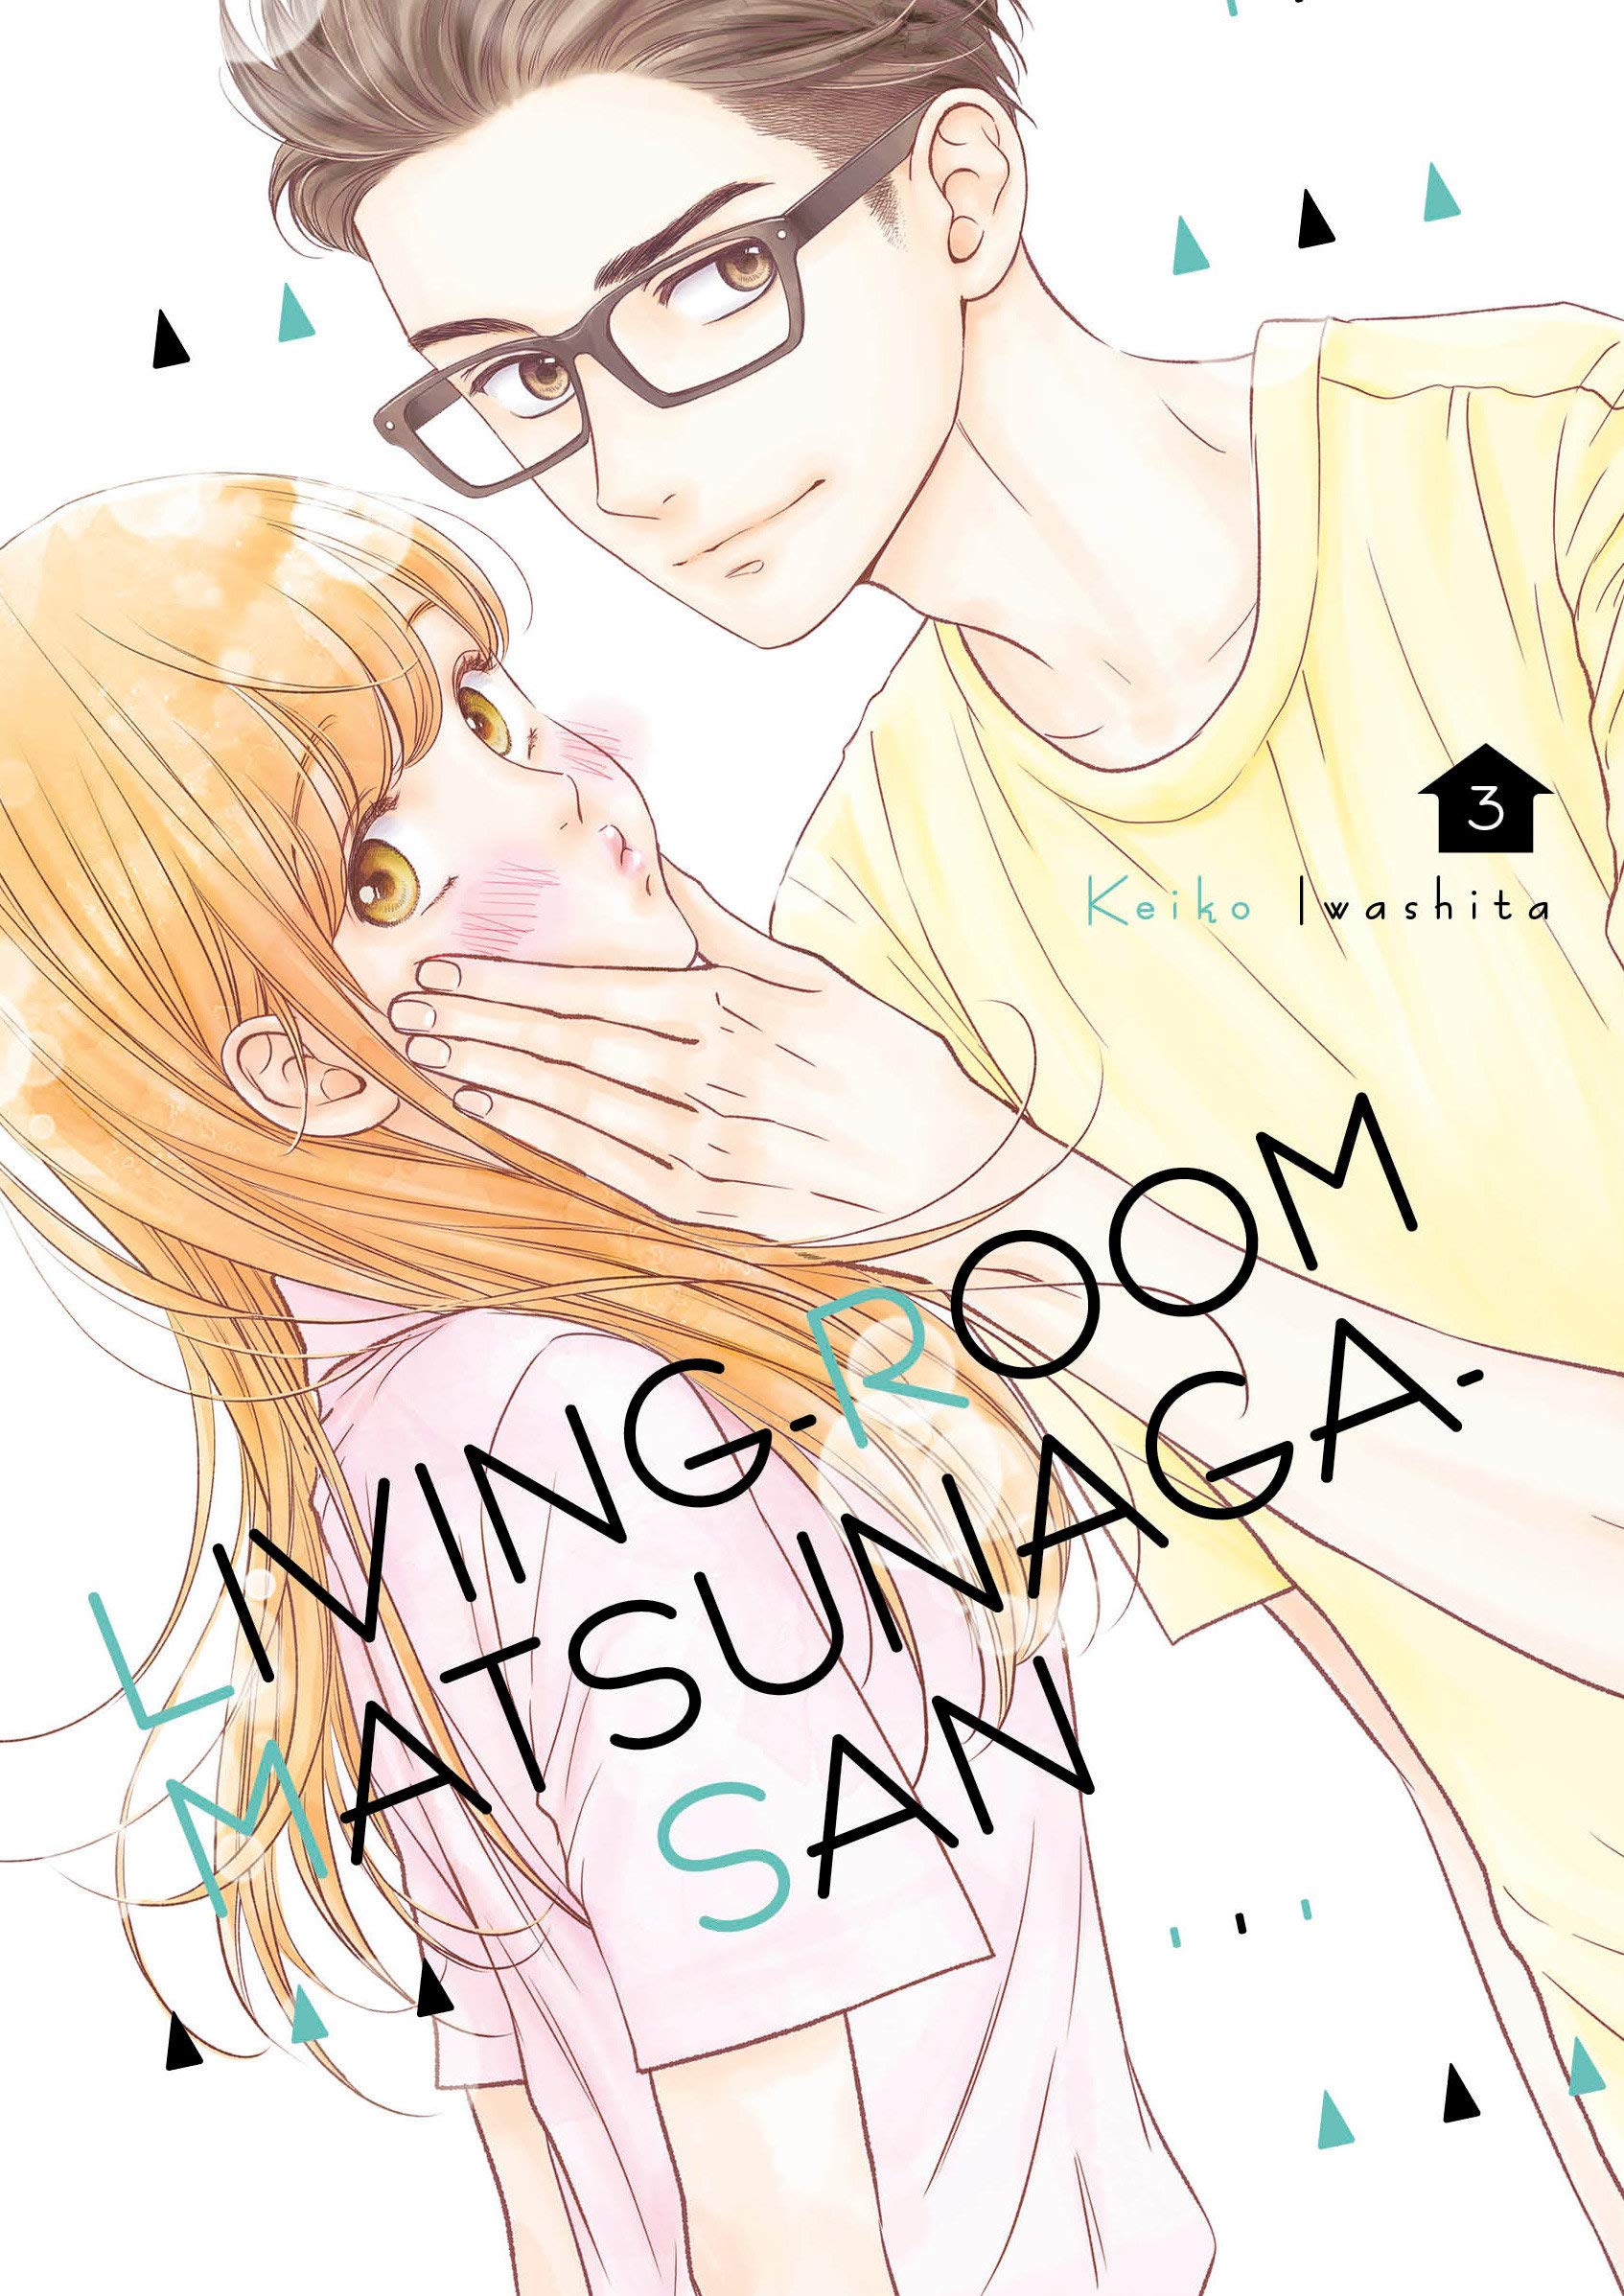 Living-Room Matsunaga-san - Volume 3 | Keiko Iwashita